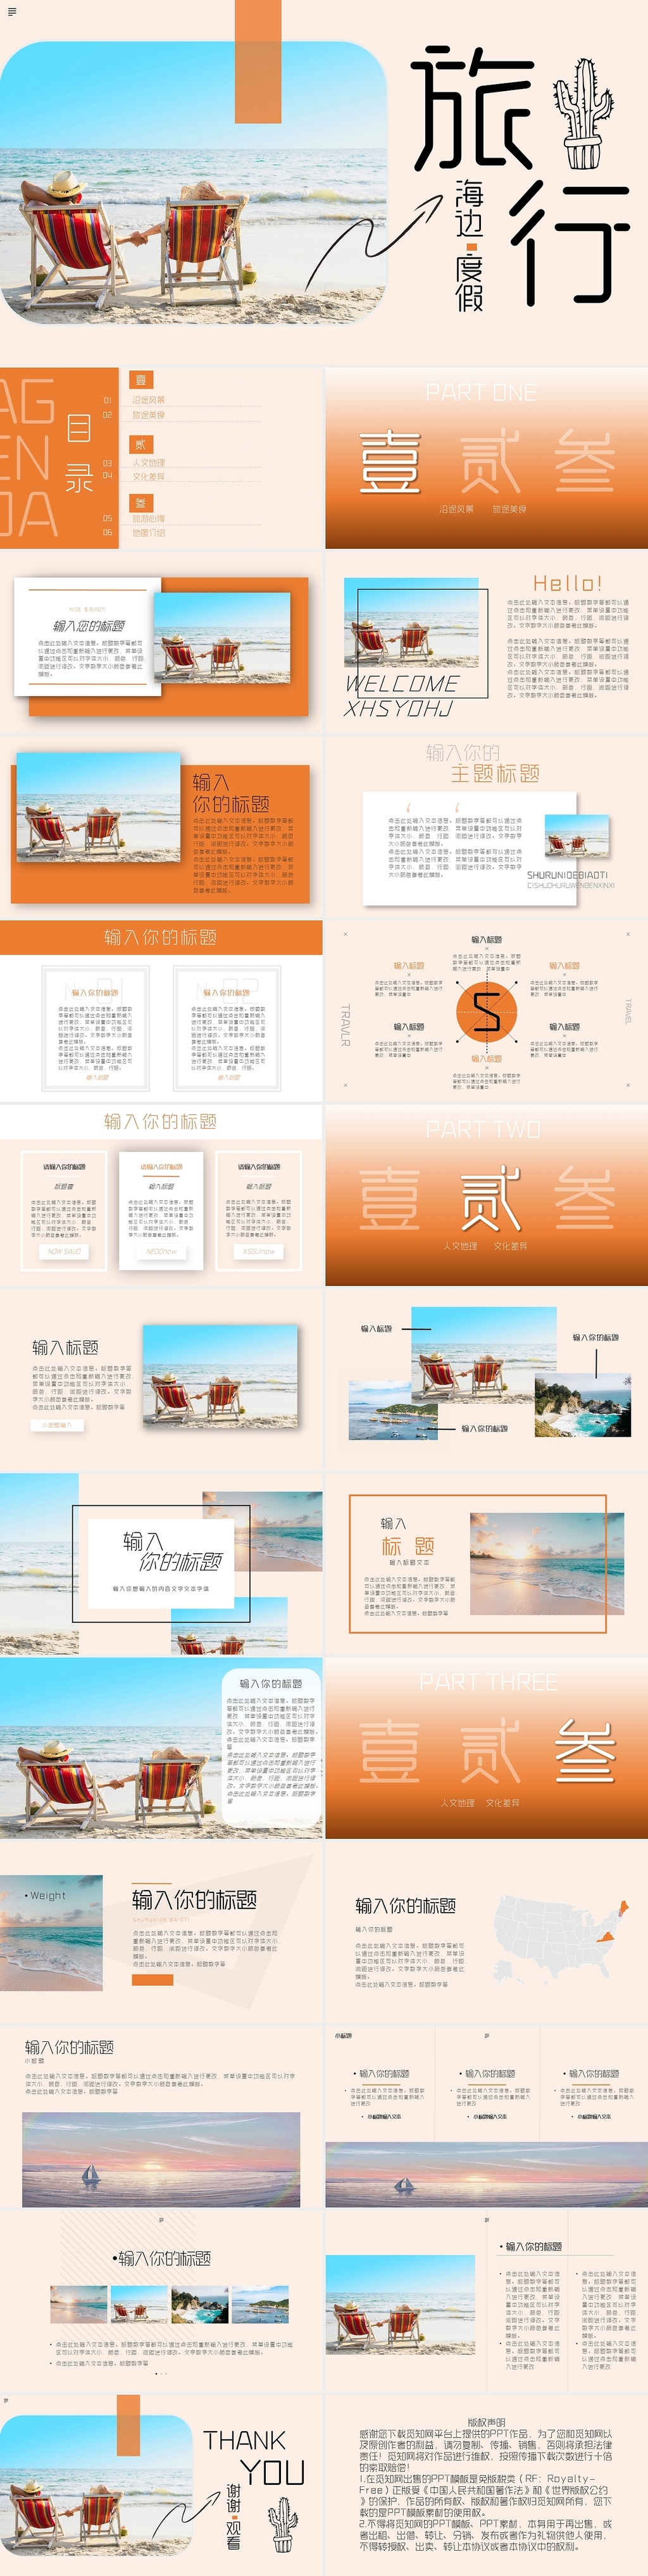 橙色杂志风海边旅行相册汇报商务PPT夏天海边旅游